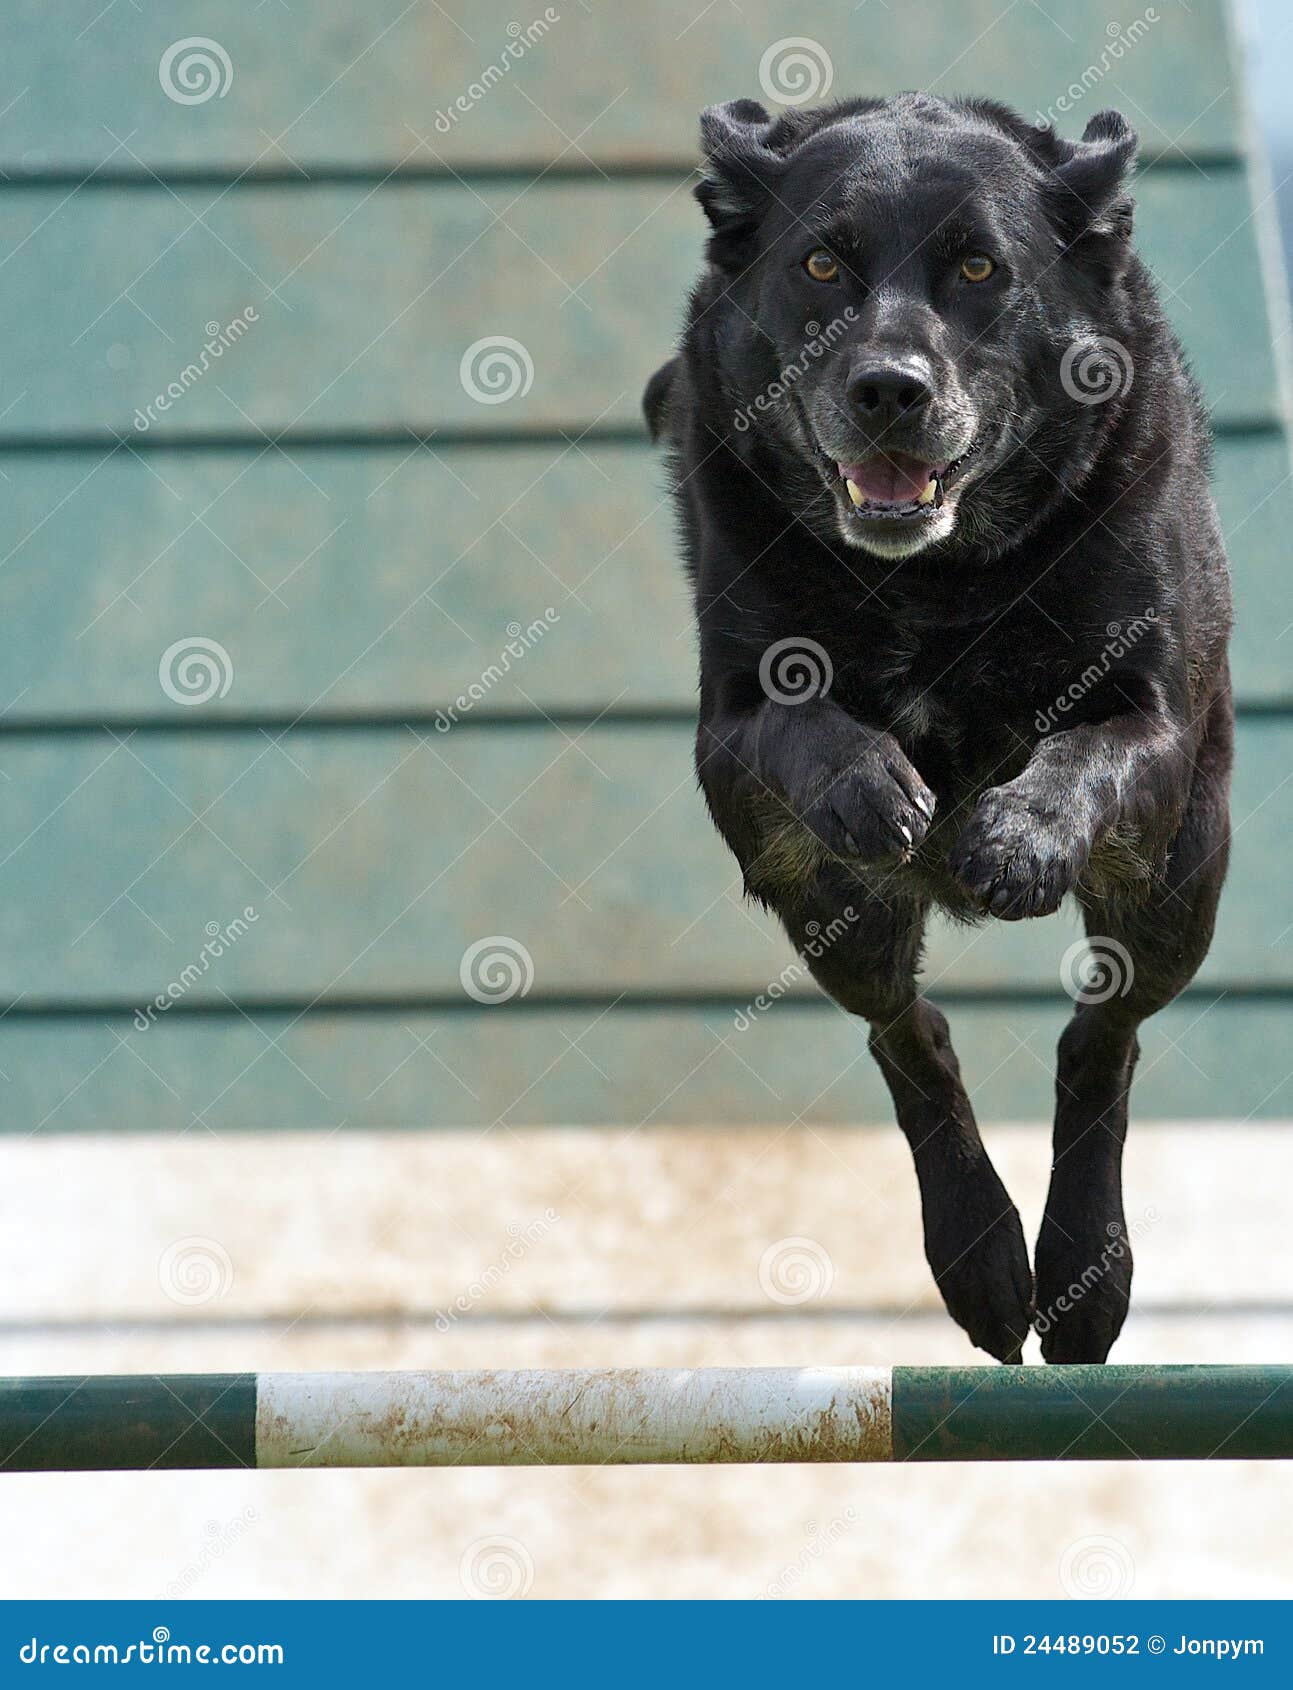 dog airborne